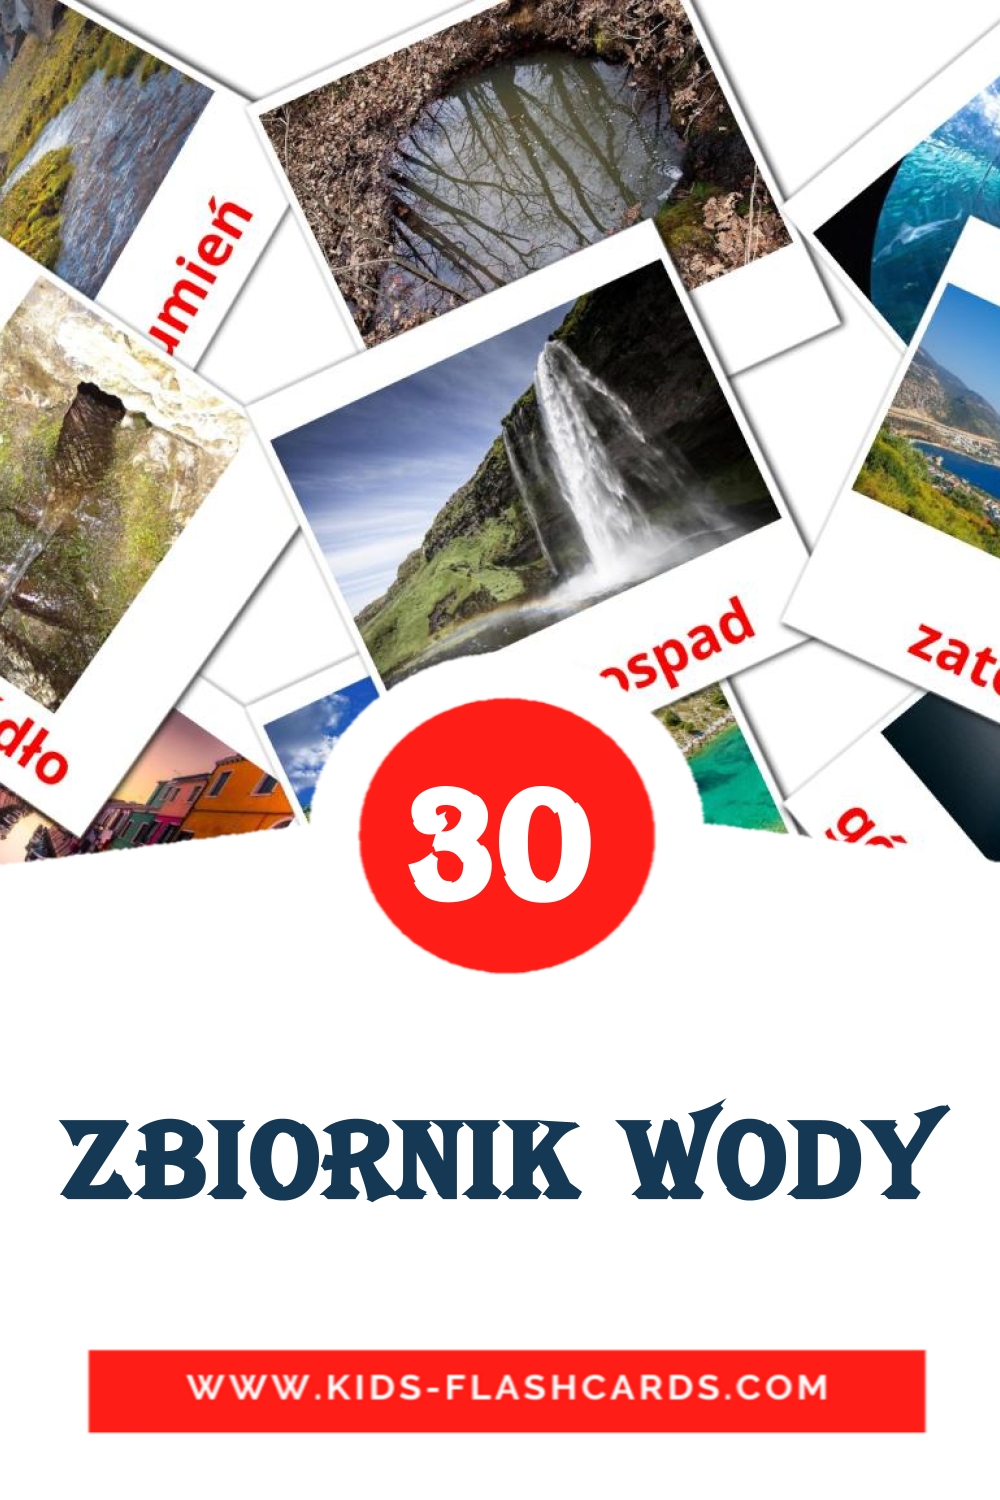 Zbiornik wody на польском для Детского Сада (30 карточек)